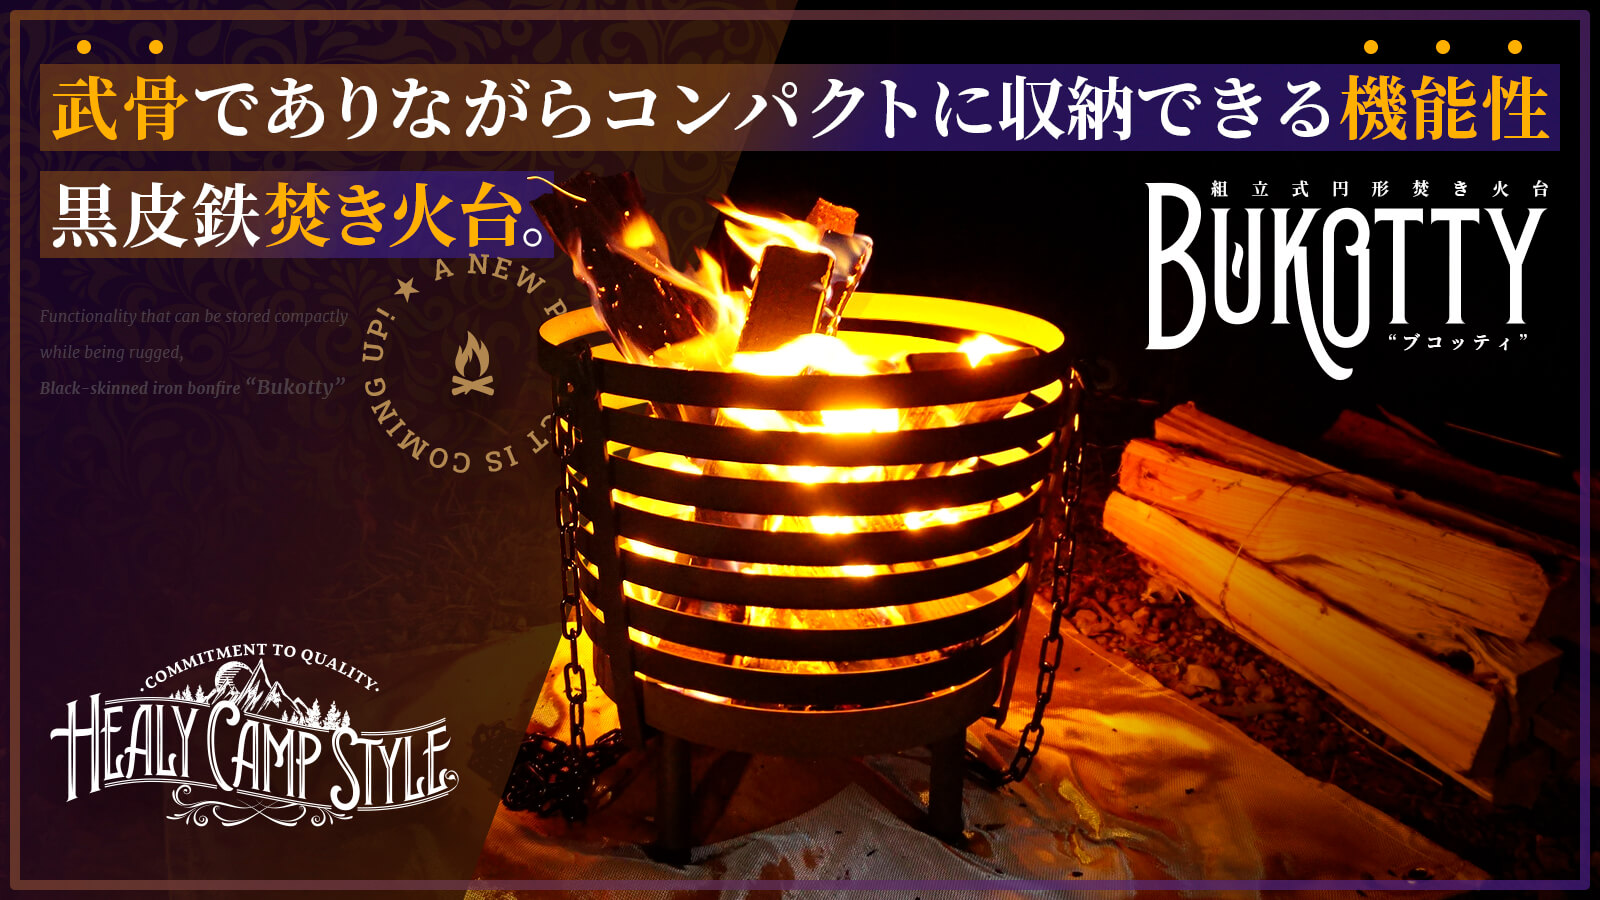 組立式黒皮鉄円形焚き火台「BUKOTTY（ブコッティ）」